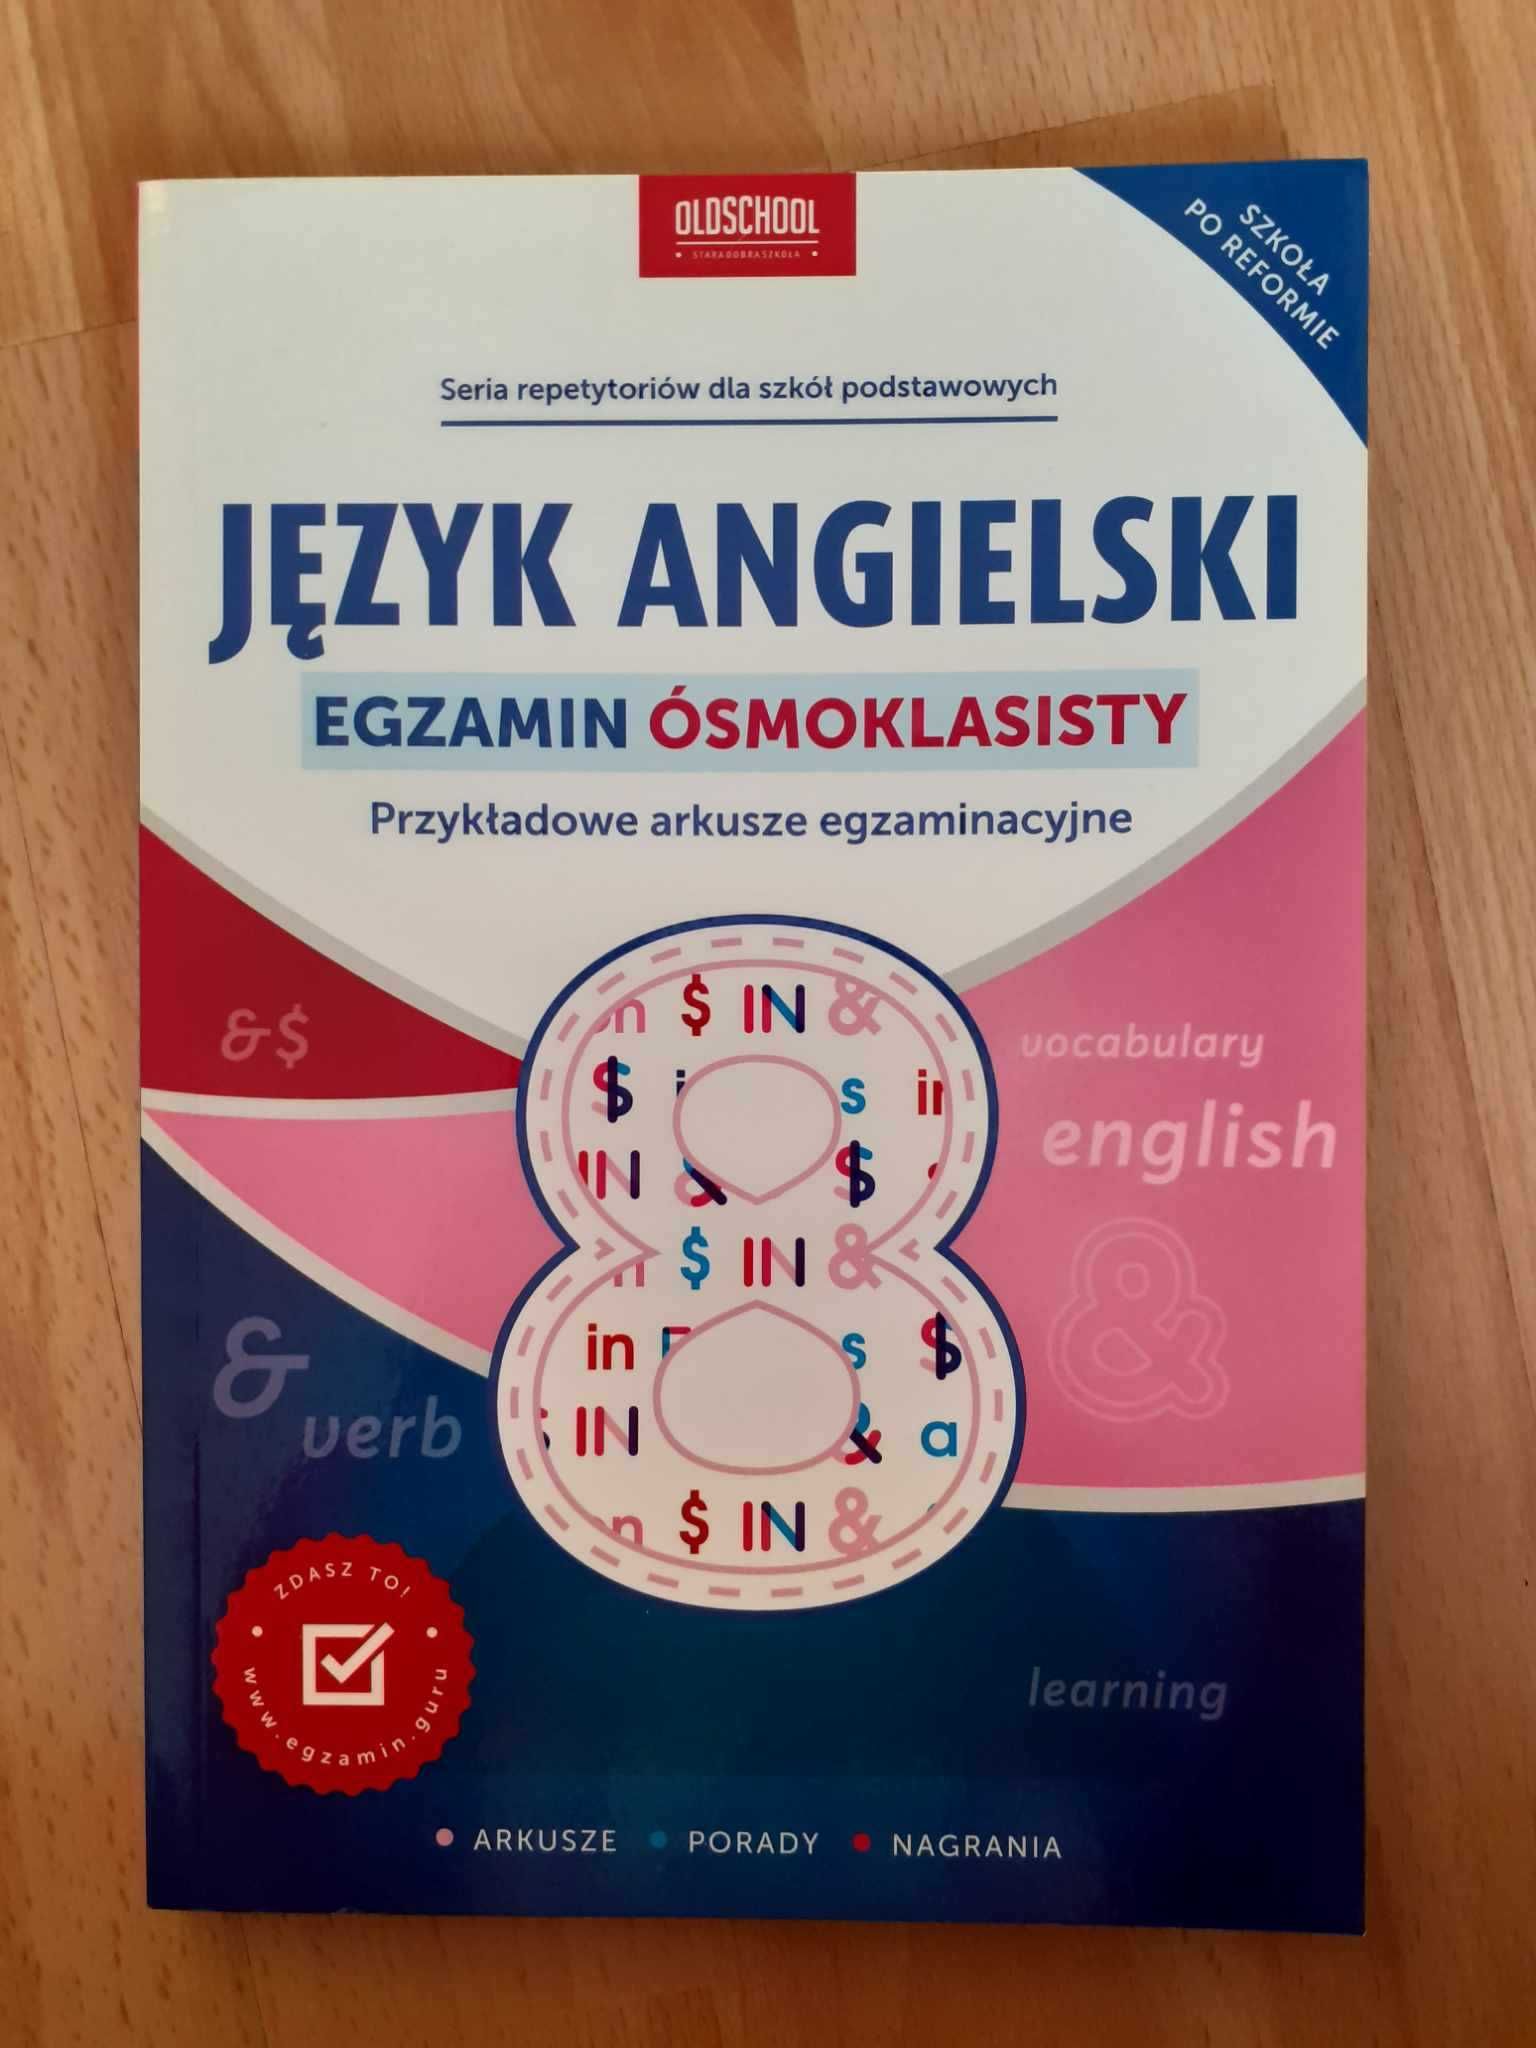 Przykładowe arkusze egzaminacyjne - egzamin ósmoklasisty- j. angielski